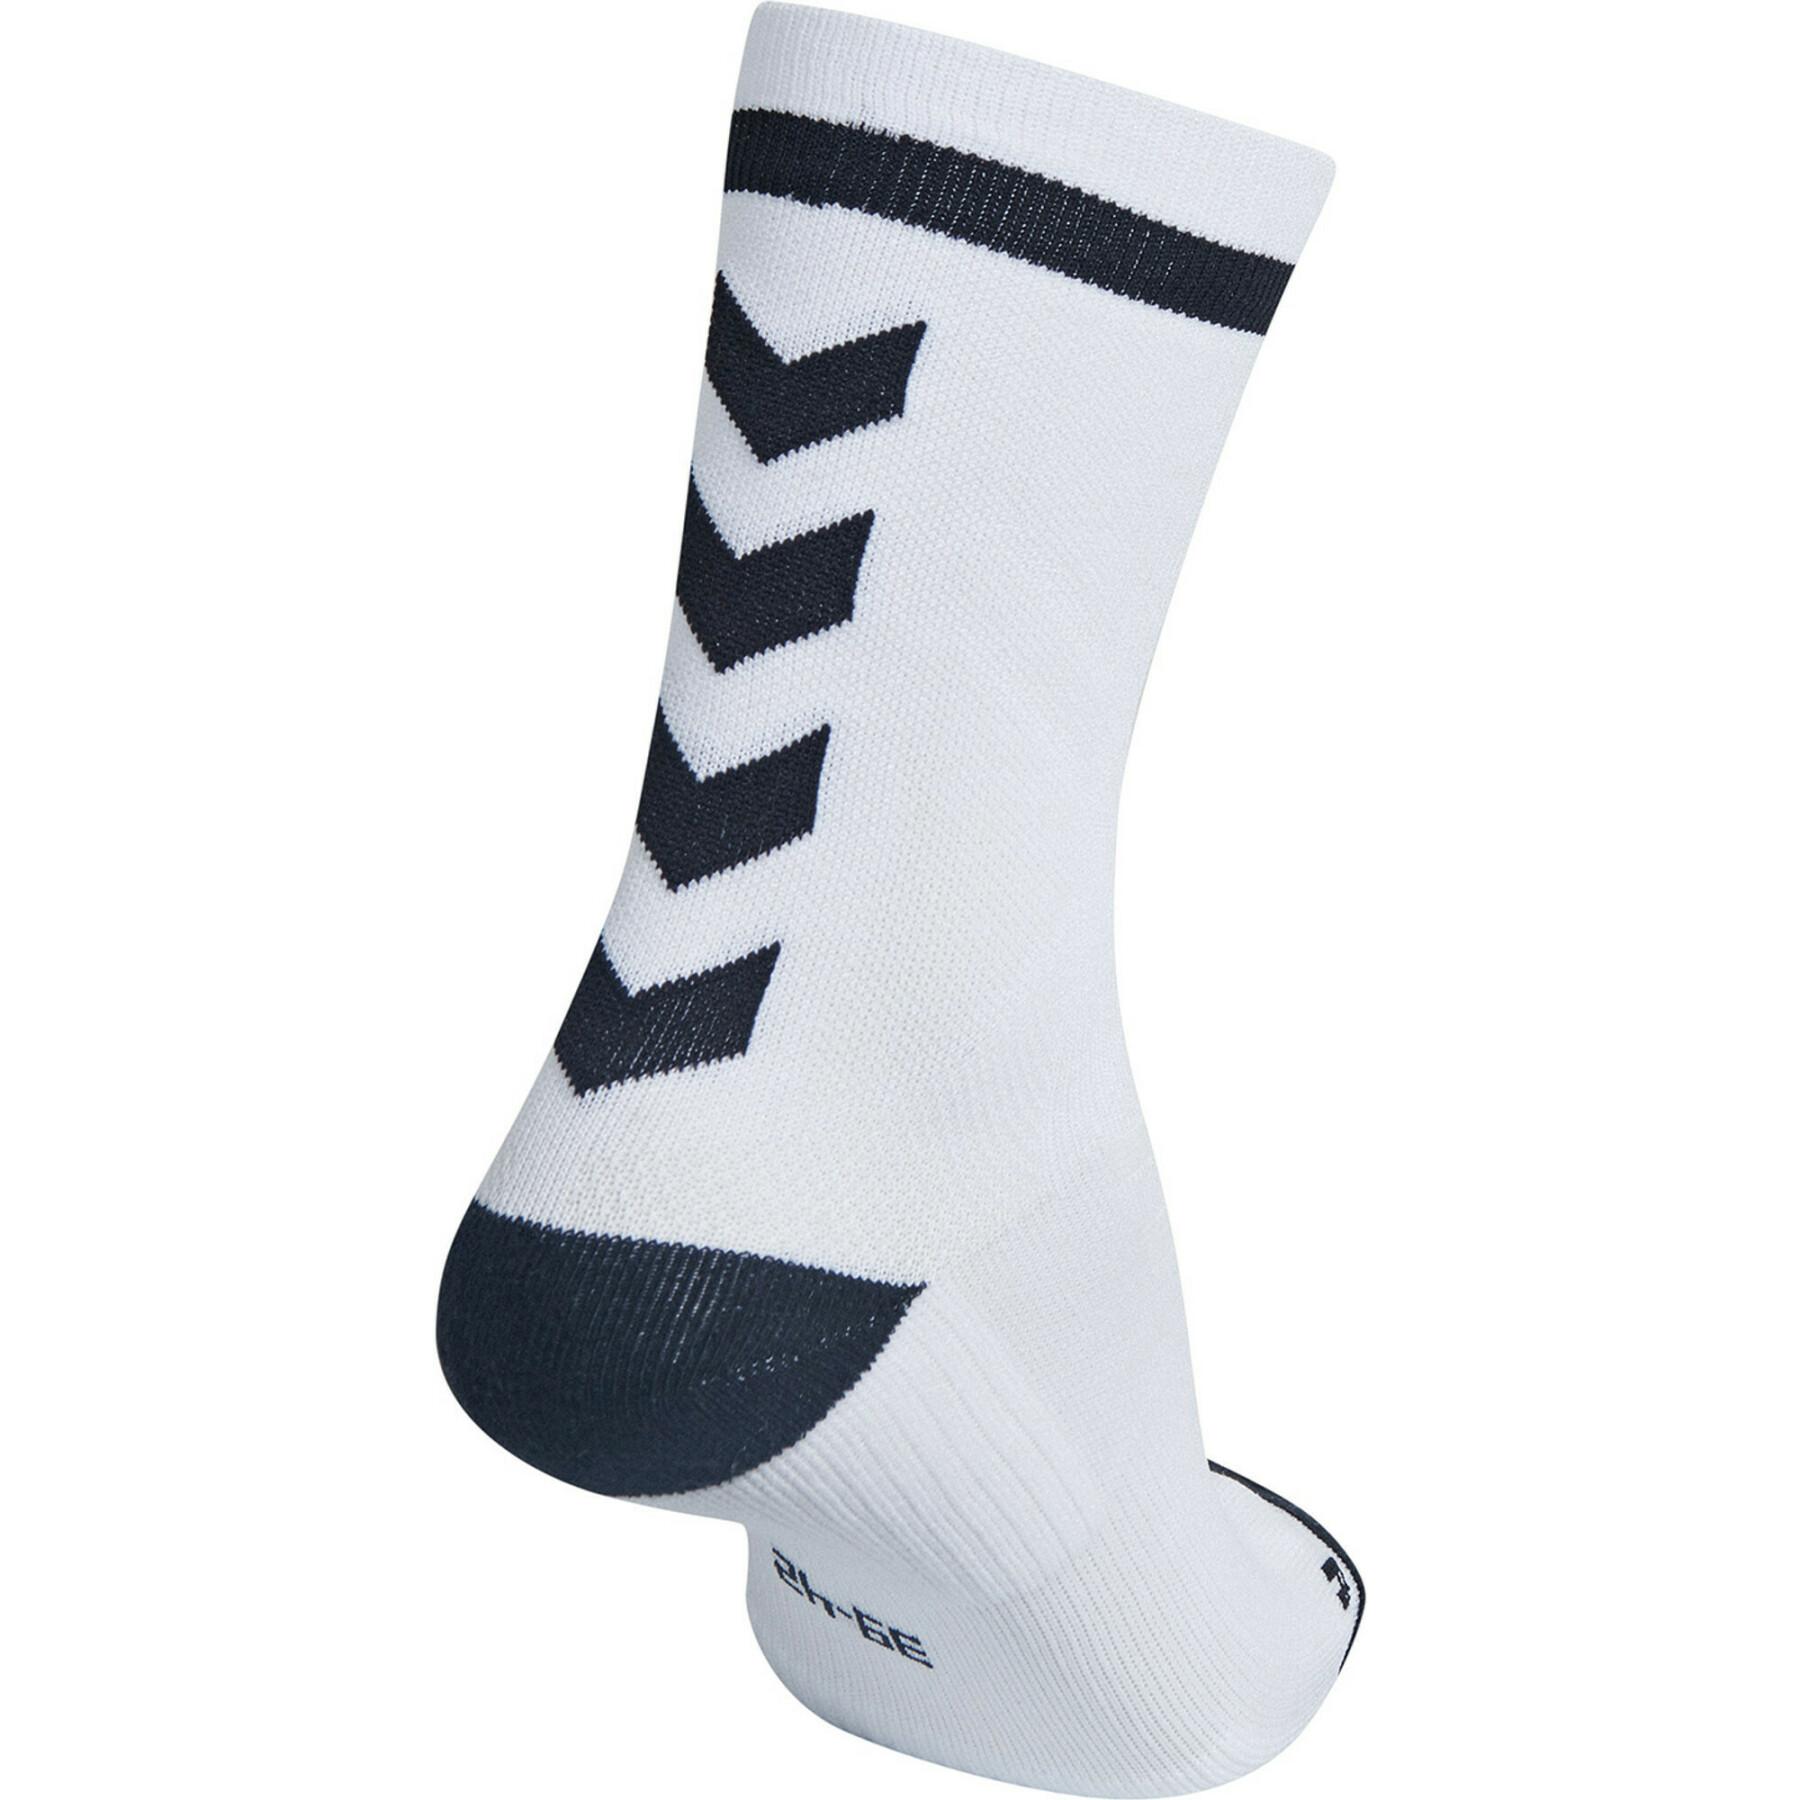 Skarpetki Hummel elite indoor sock low